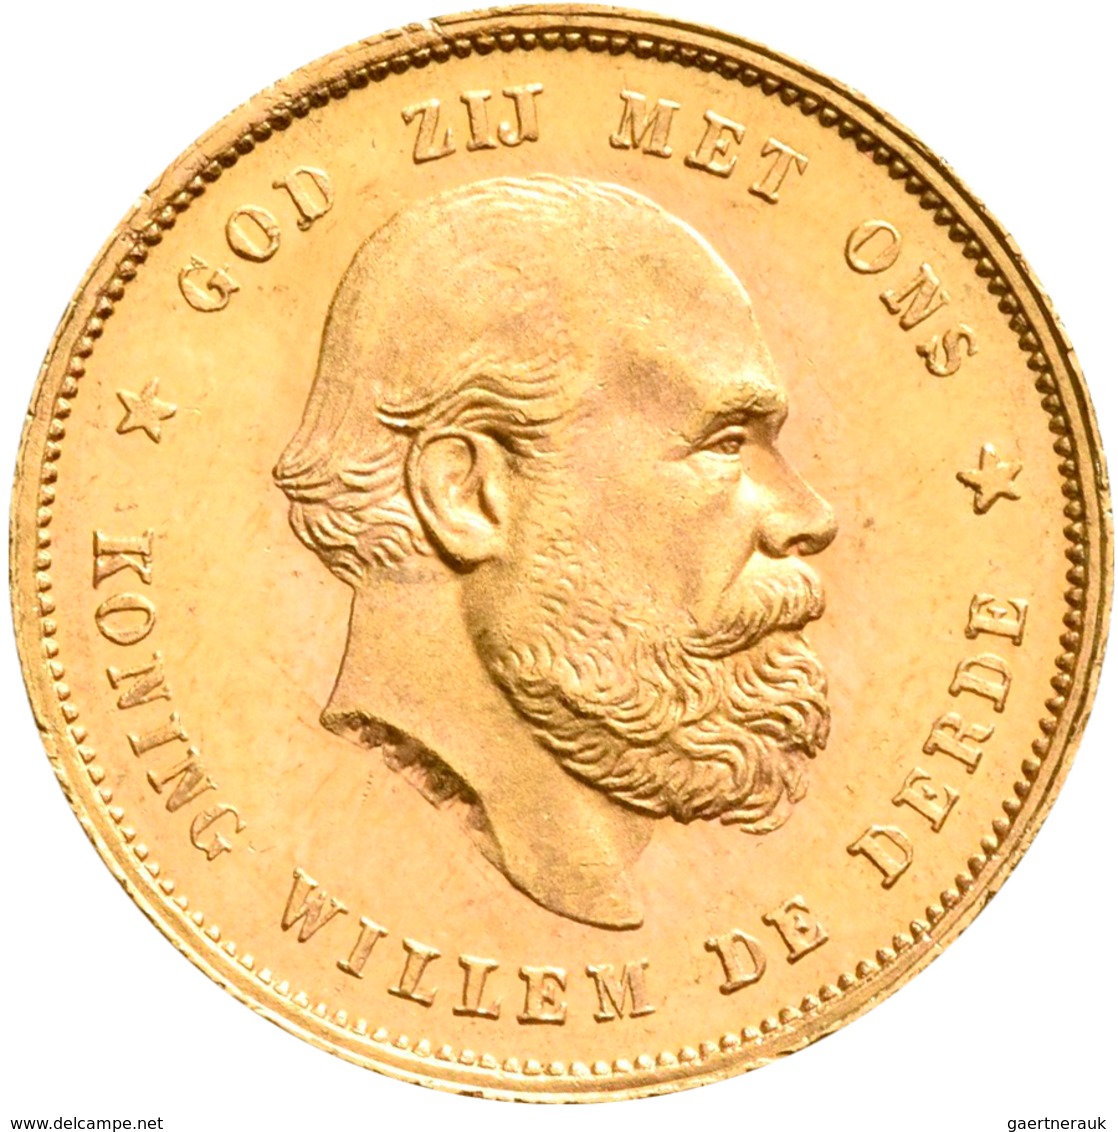 Niederlande - Anlagegold: Wilhelm III. 1849-1890: 10 Gulden 1877, KM# 106, Friedberg 342. 6,70 G, 90 - Gold- & Silbermünzen